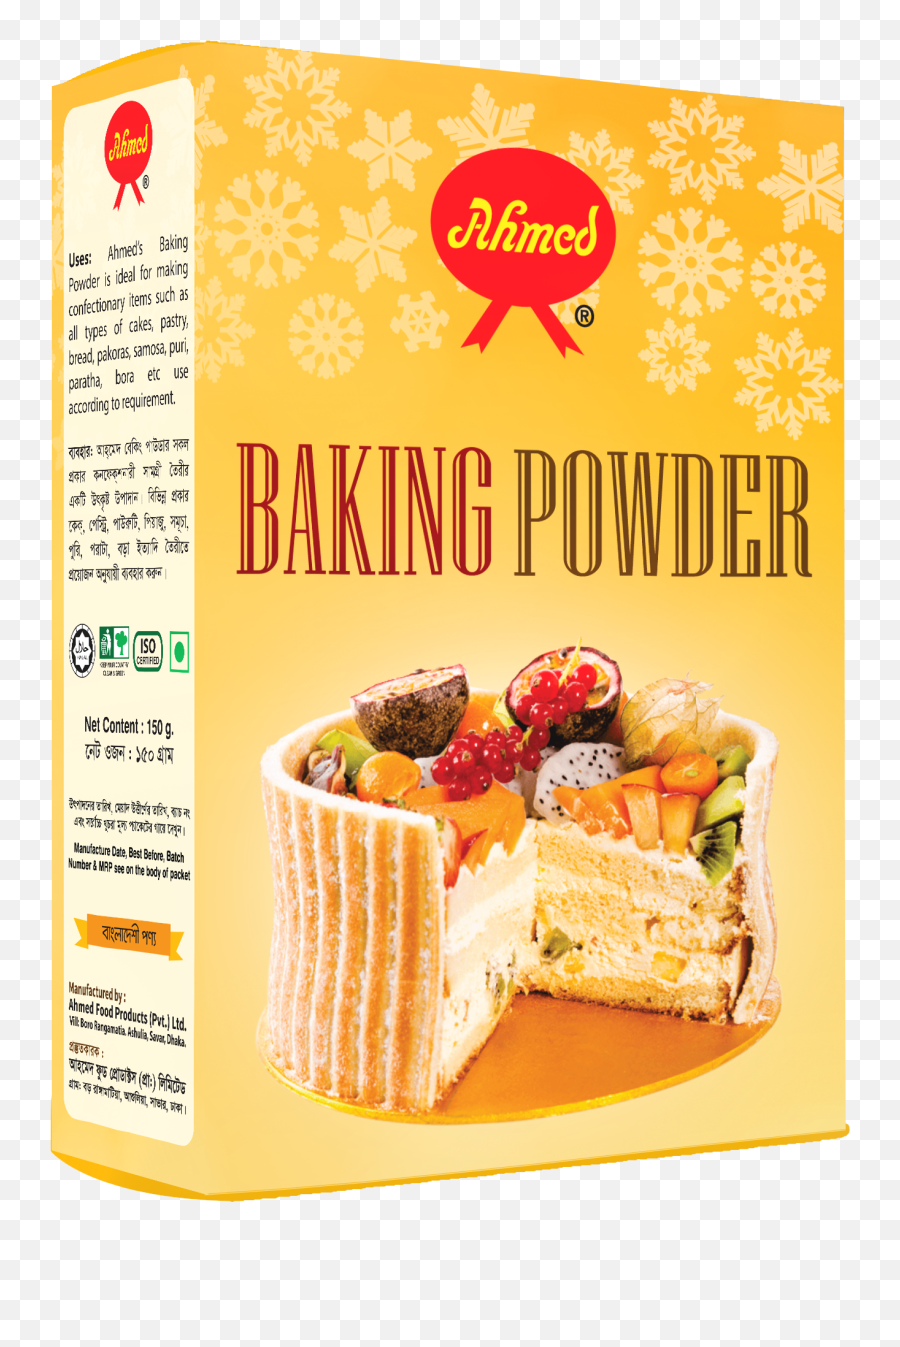 Baking Powder - Ahmed Baking Powder 150 Gm Pack Png,Baking Soda Png